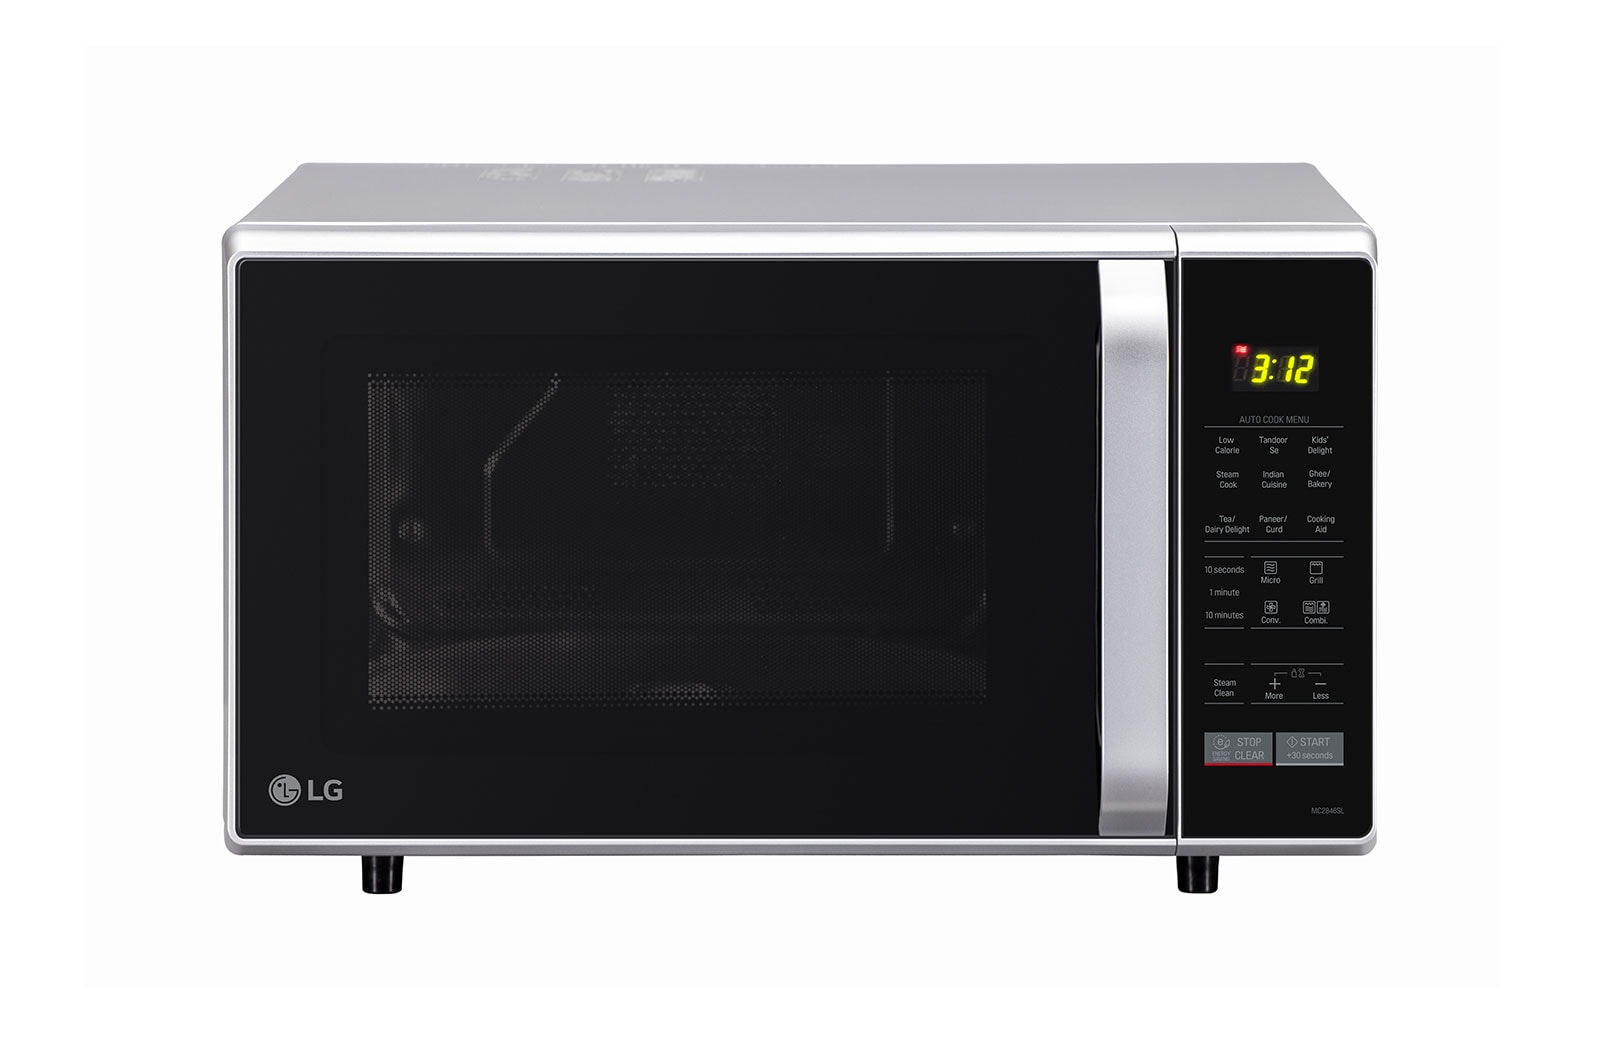 LG 28 L Convection Microwave Oven  (MC2846SL, Silver), MC2846SL